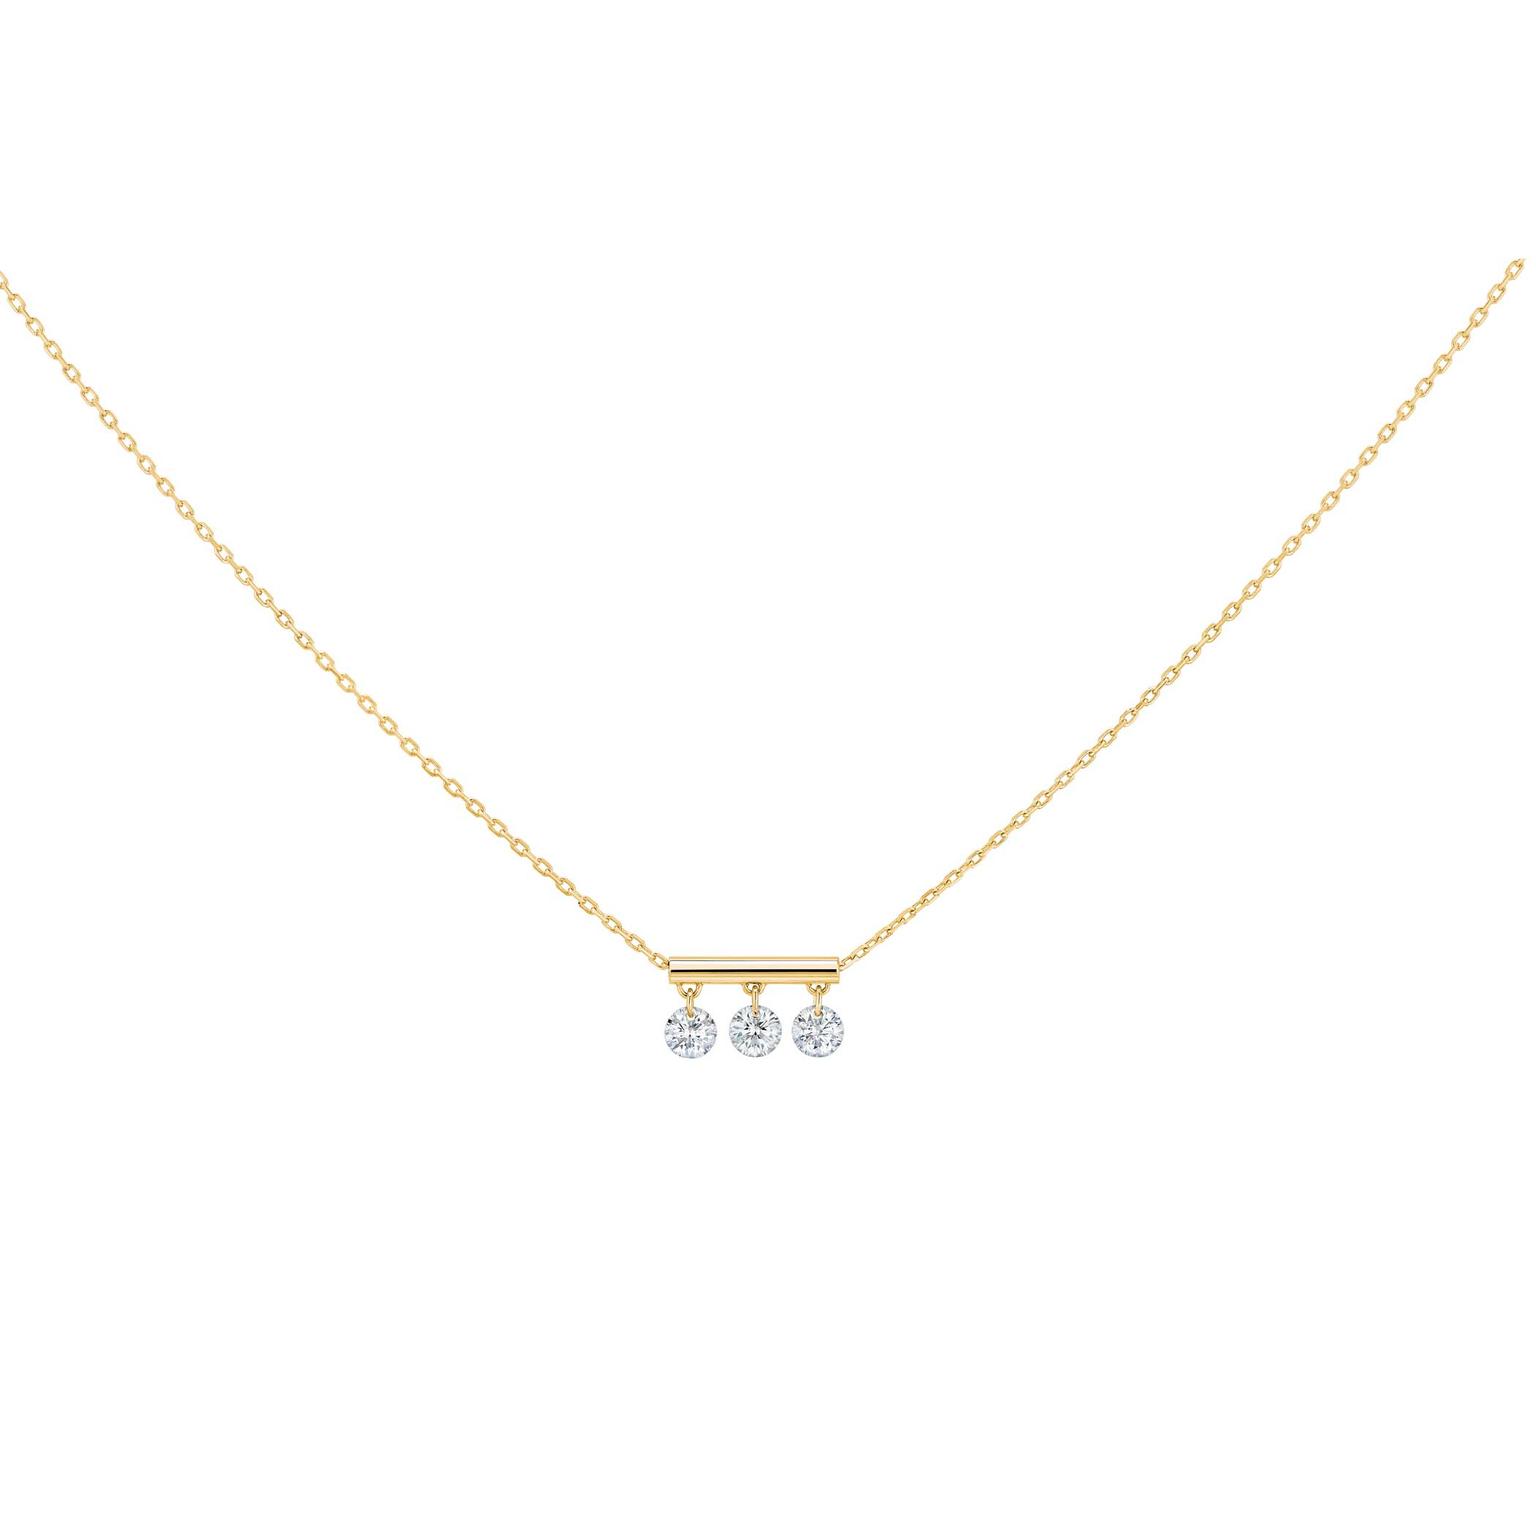 La Brune & La Blonde Pampilles necklace with brilliant-cut diamonds on a gold chain